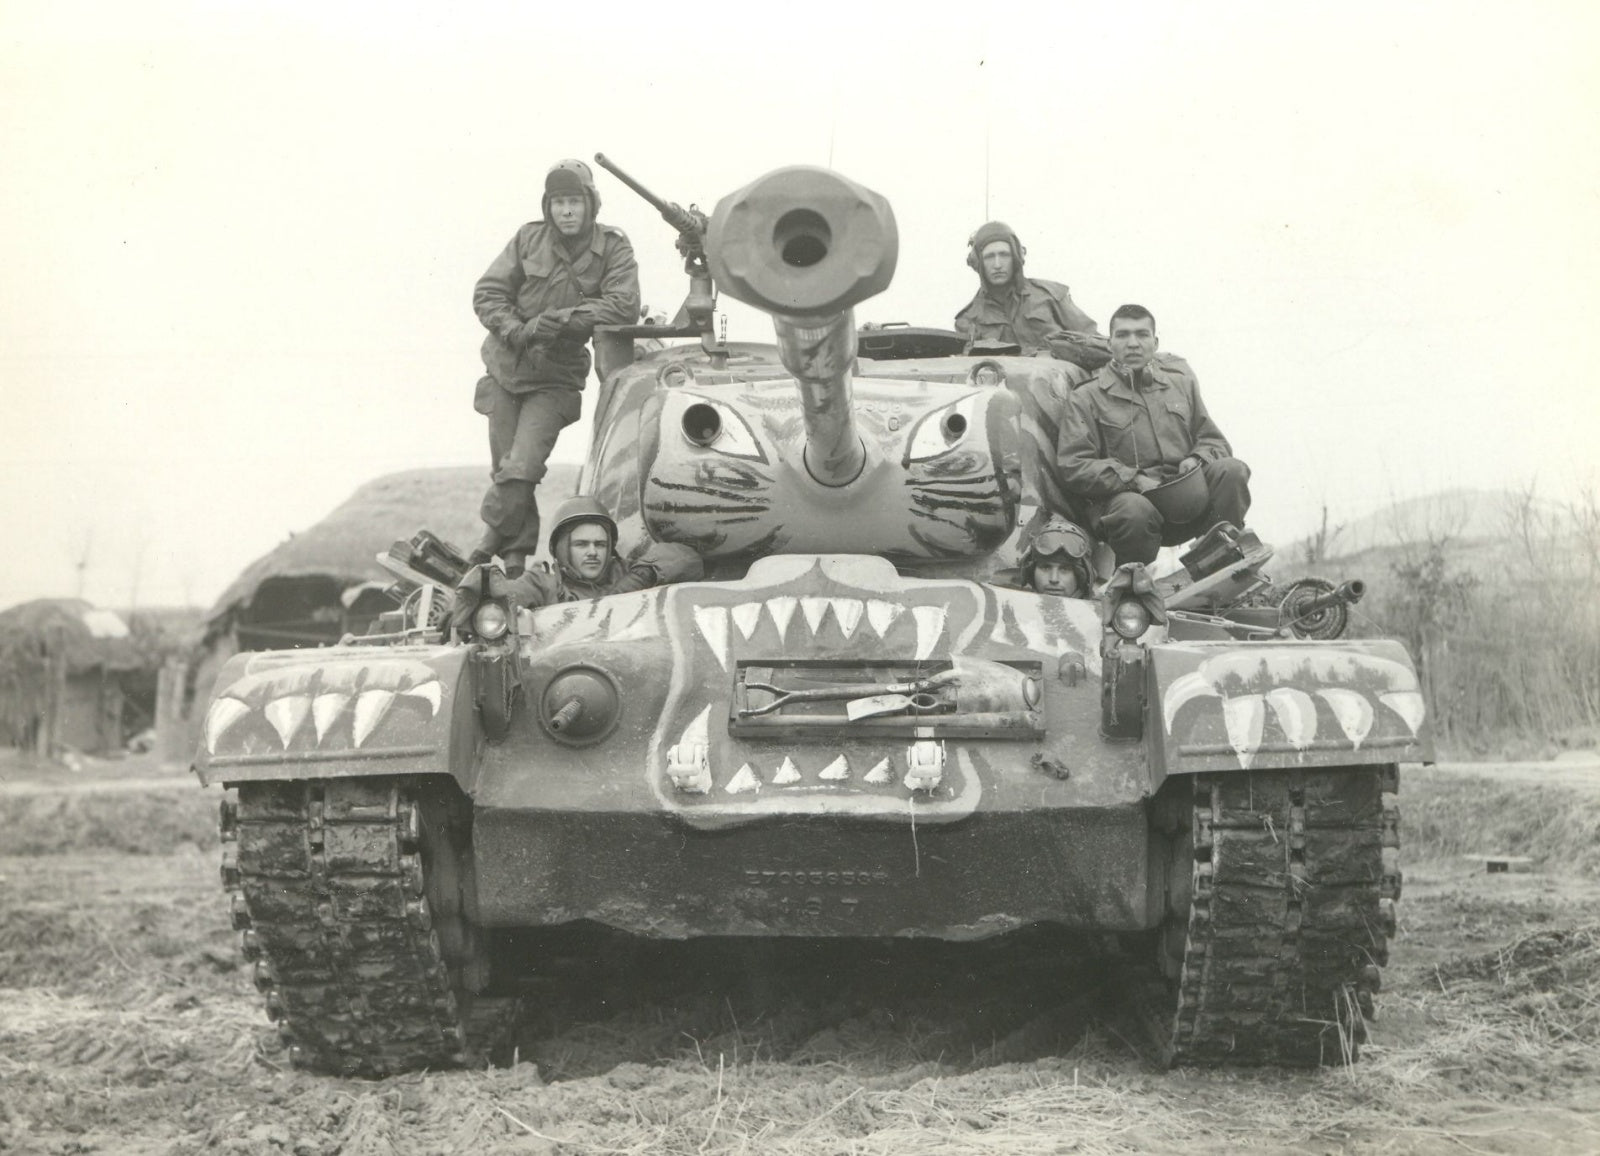 TAK2117 - Takom 1/35 - M46 "Patton" Medium Tank